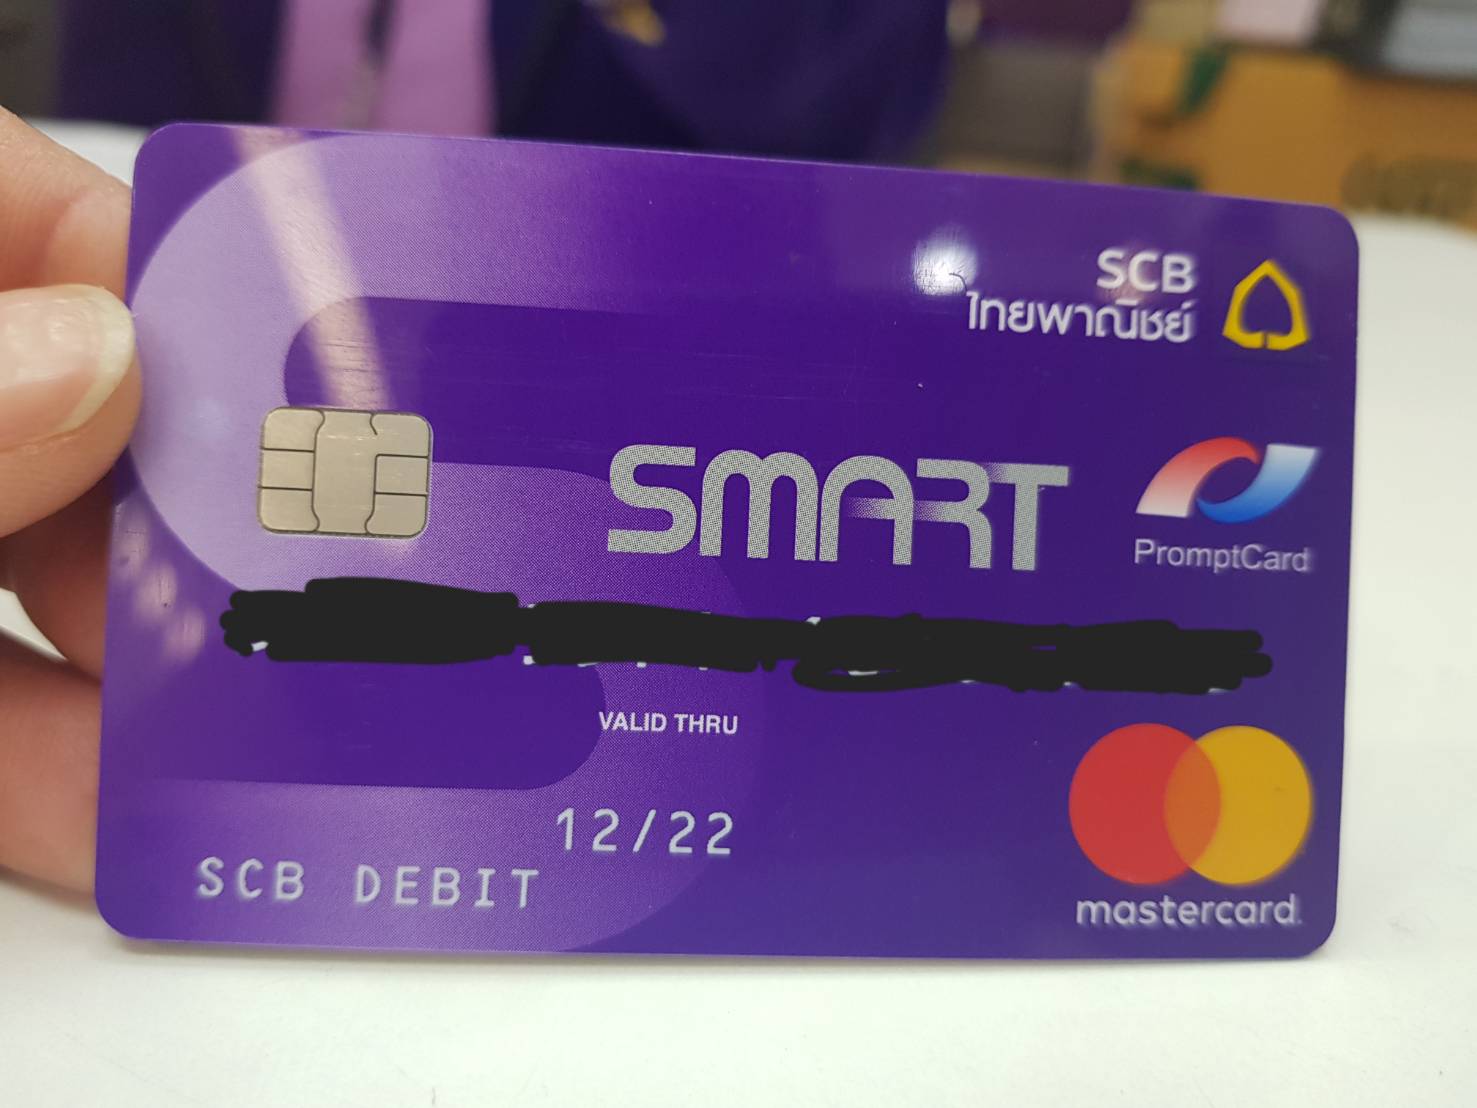 บัตรเดบิต (ซิม, พิน6ตัว) ธนาคารไทยพานิชย์ มีอายุการใช้งานกี่ปี? - Pantip